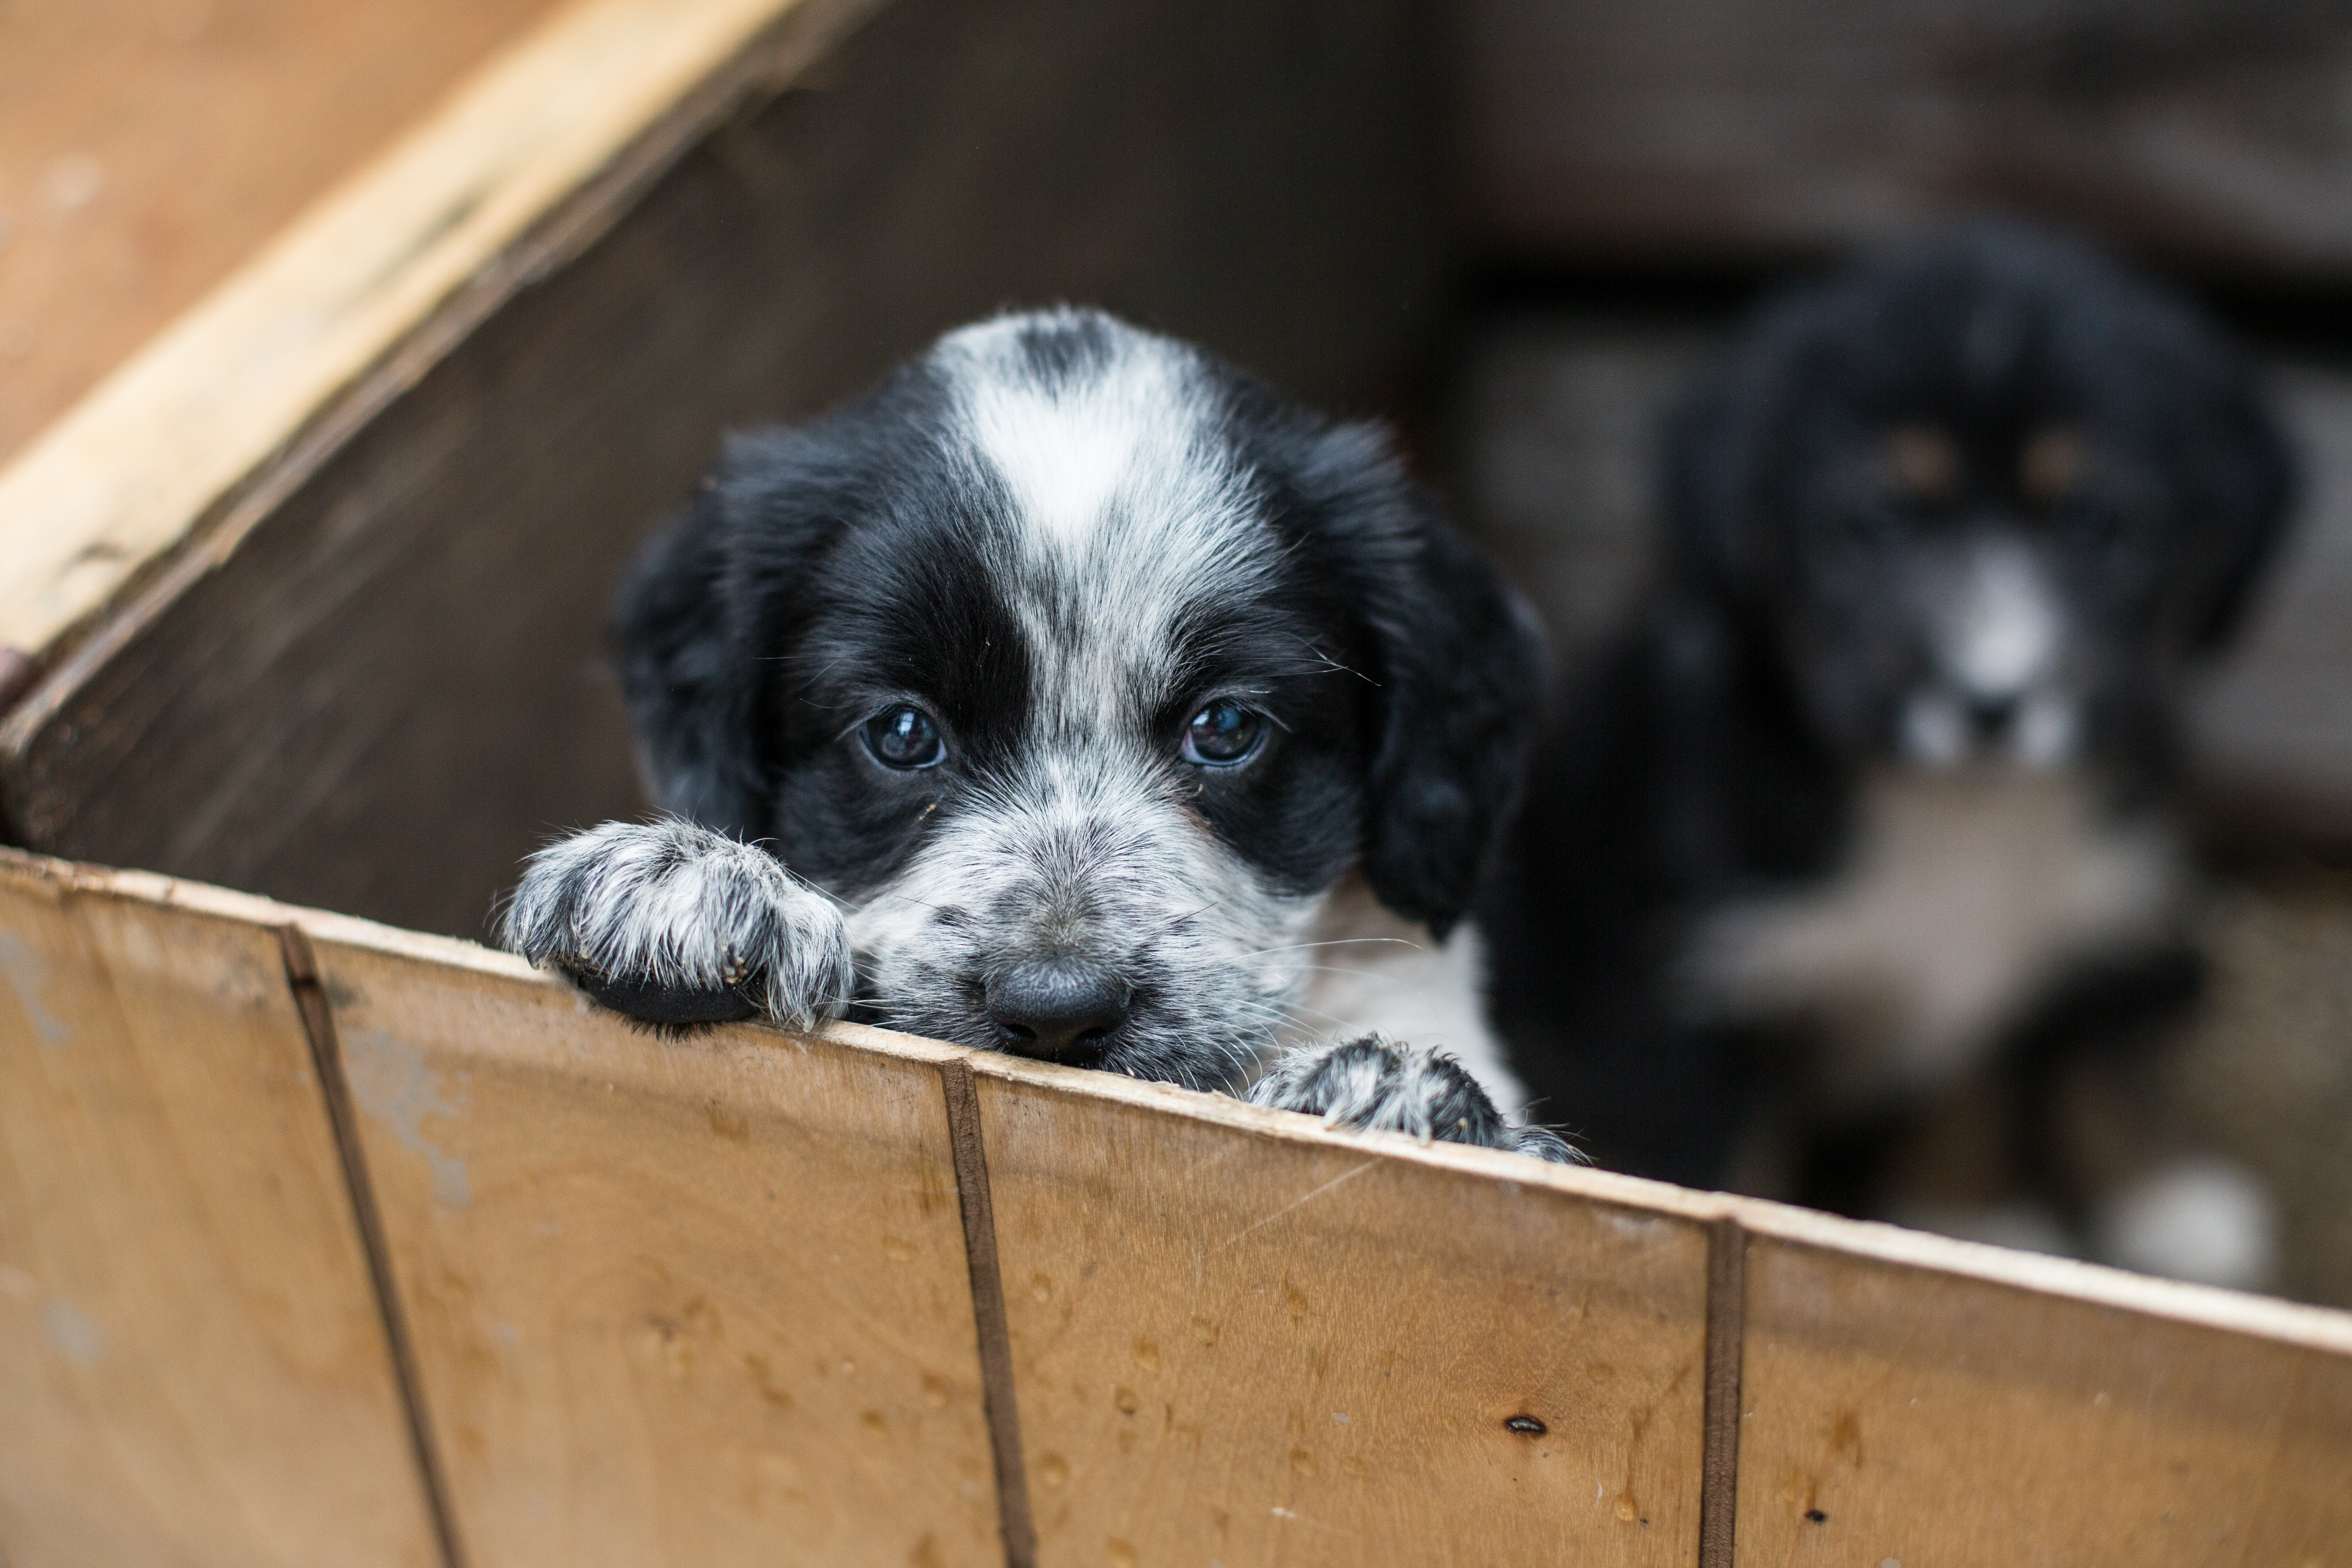 Heerlijk tweedehands Tub Een puppy adopteren uit het asiel - Waar moet ik opletten? | zooplus